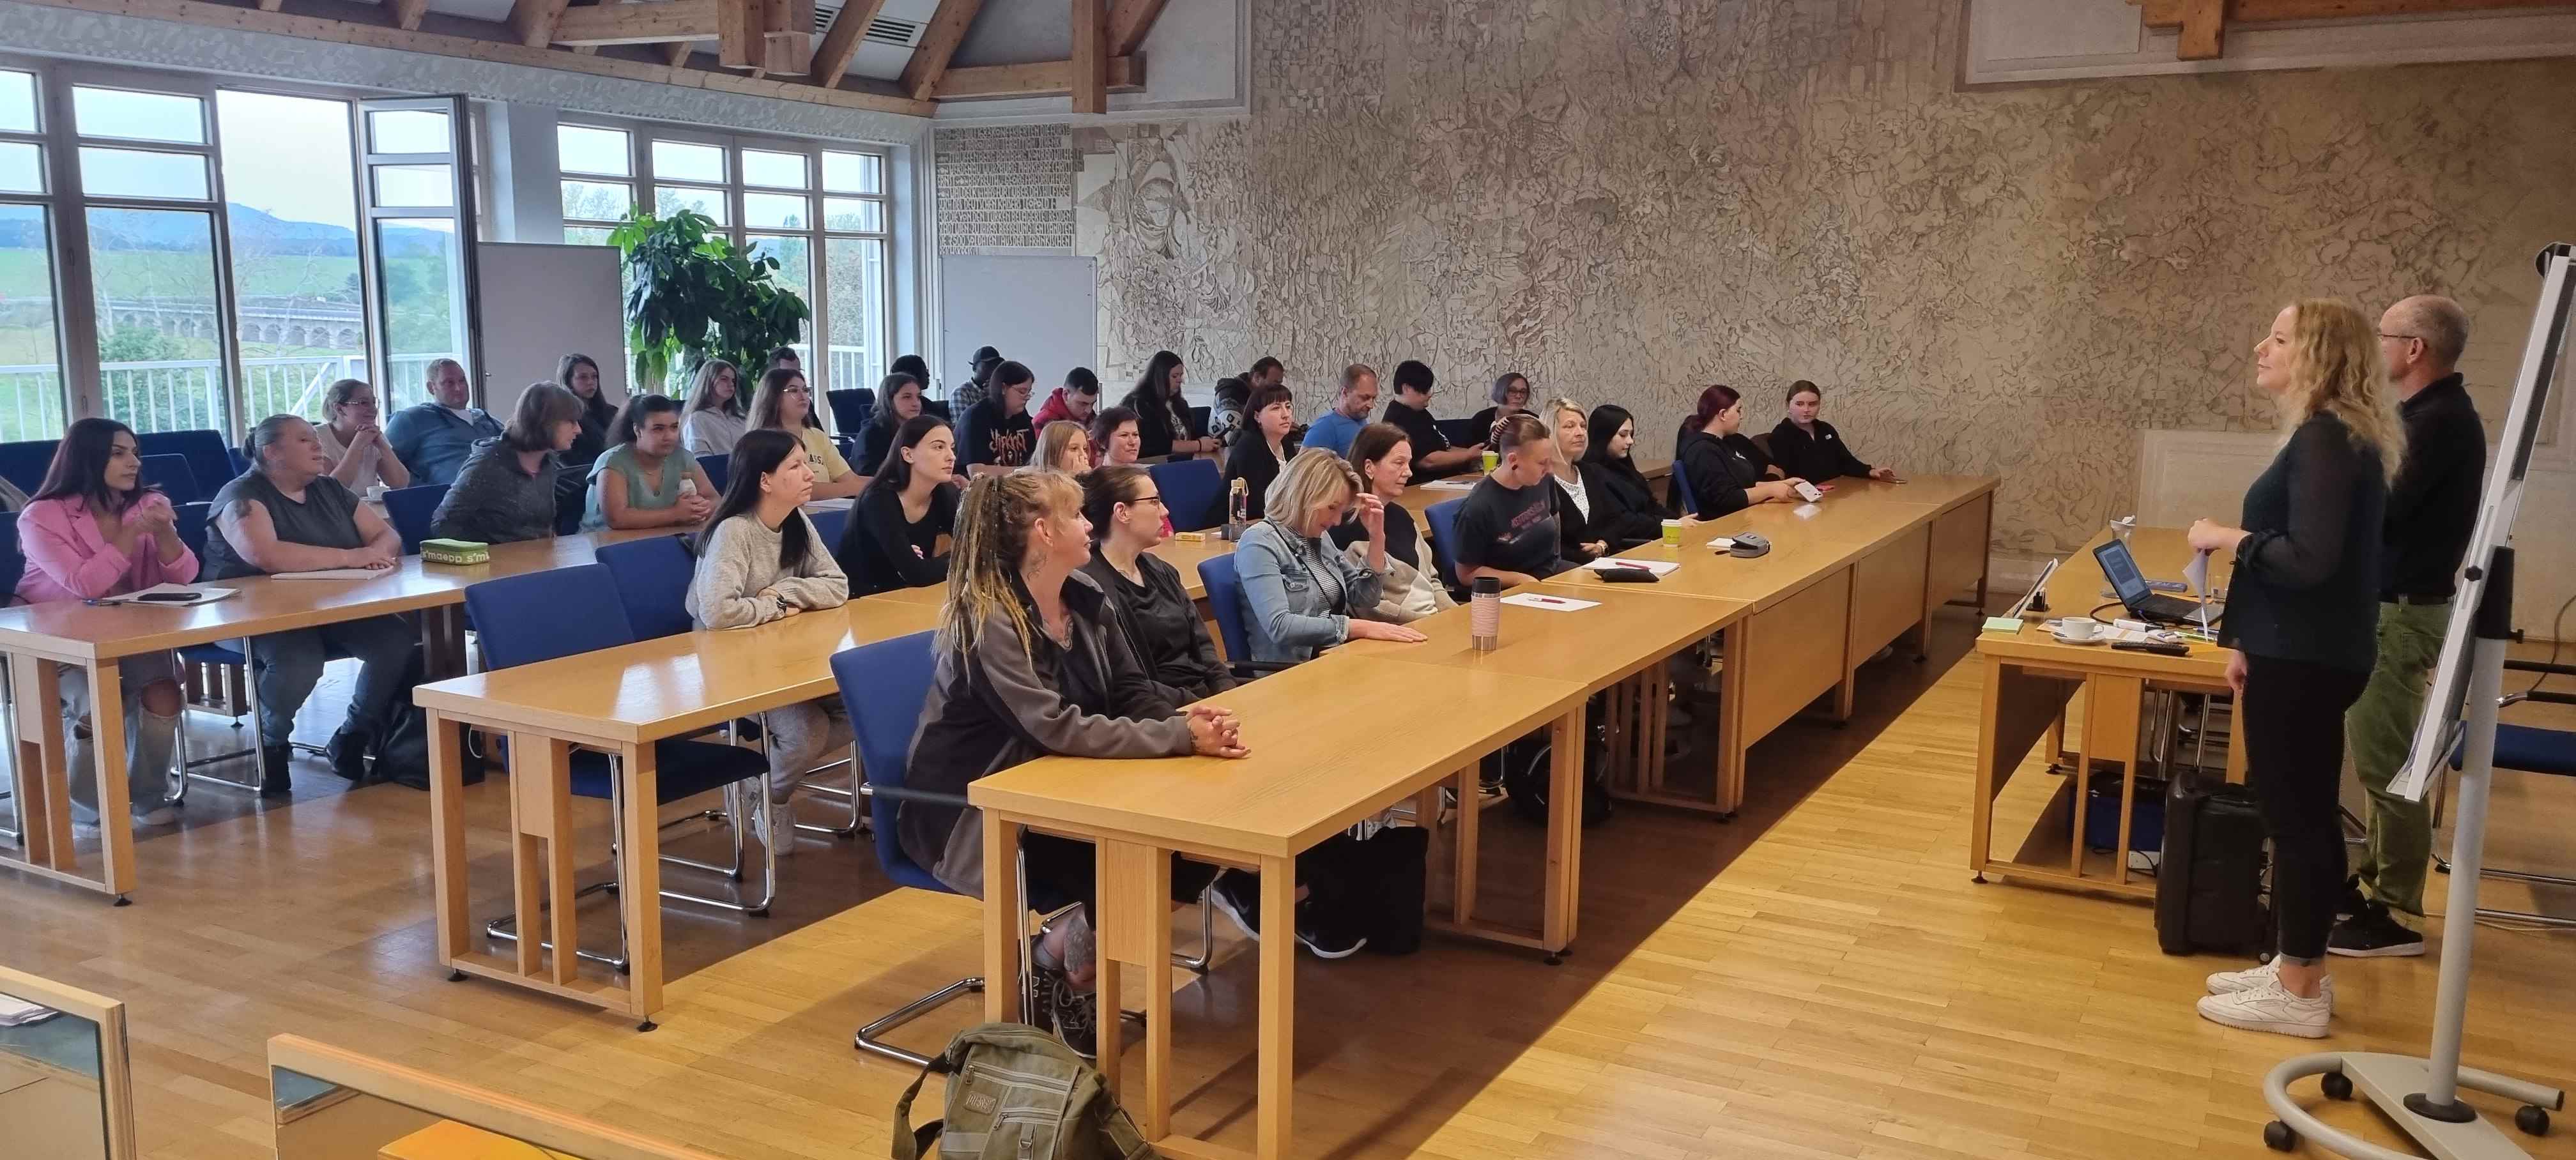 Schülerinnen und Schüler hören den Vortrag von Markus Proske im Landratsamt Haßberge. Foto: Matthias Beck.